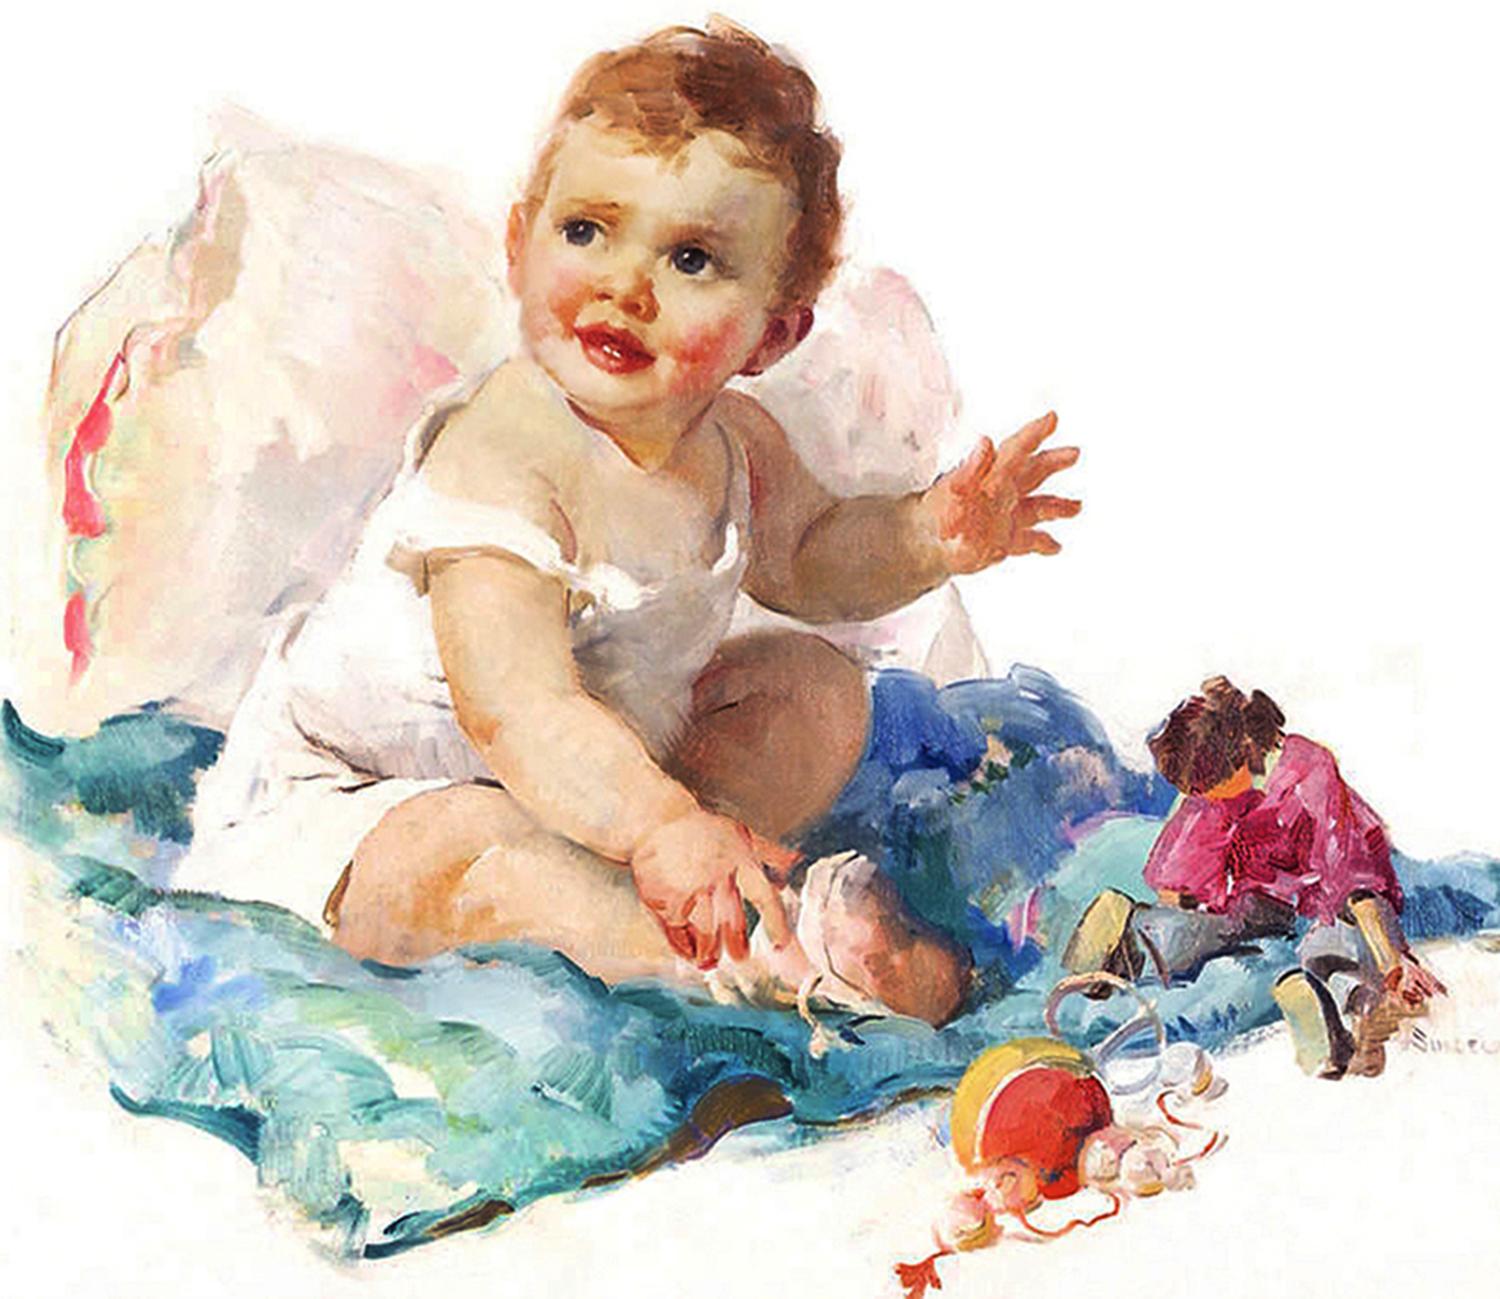 Baby Cute avec chérubins rosy jouant avec des jouets  - Painting de Haddon Hubbard Sundblom